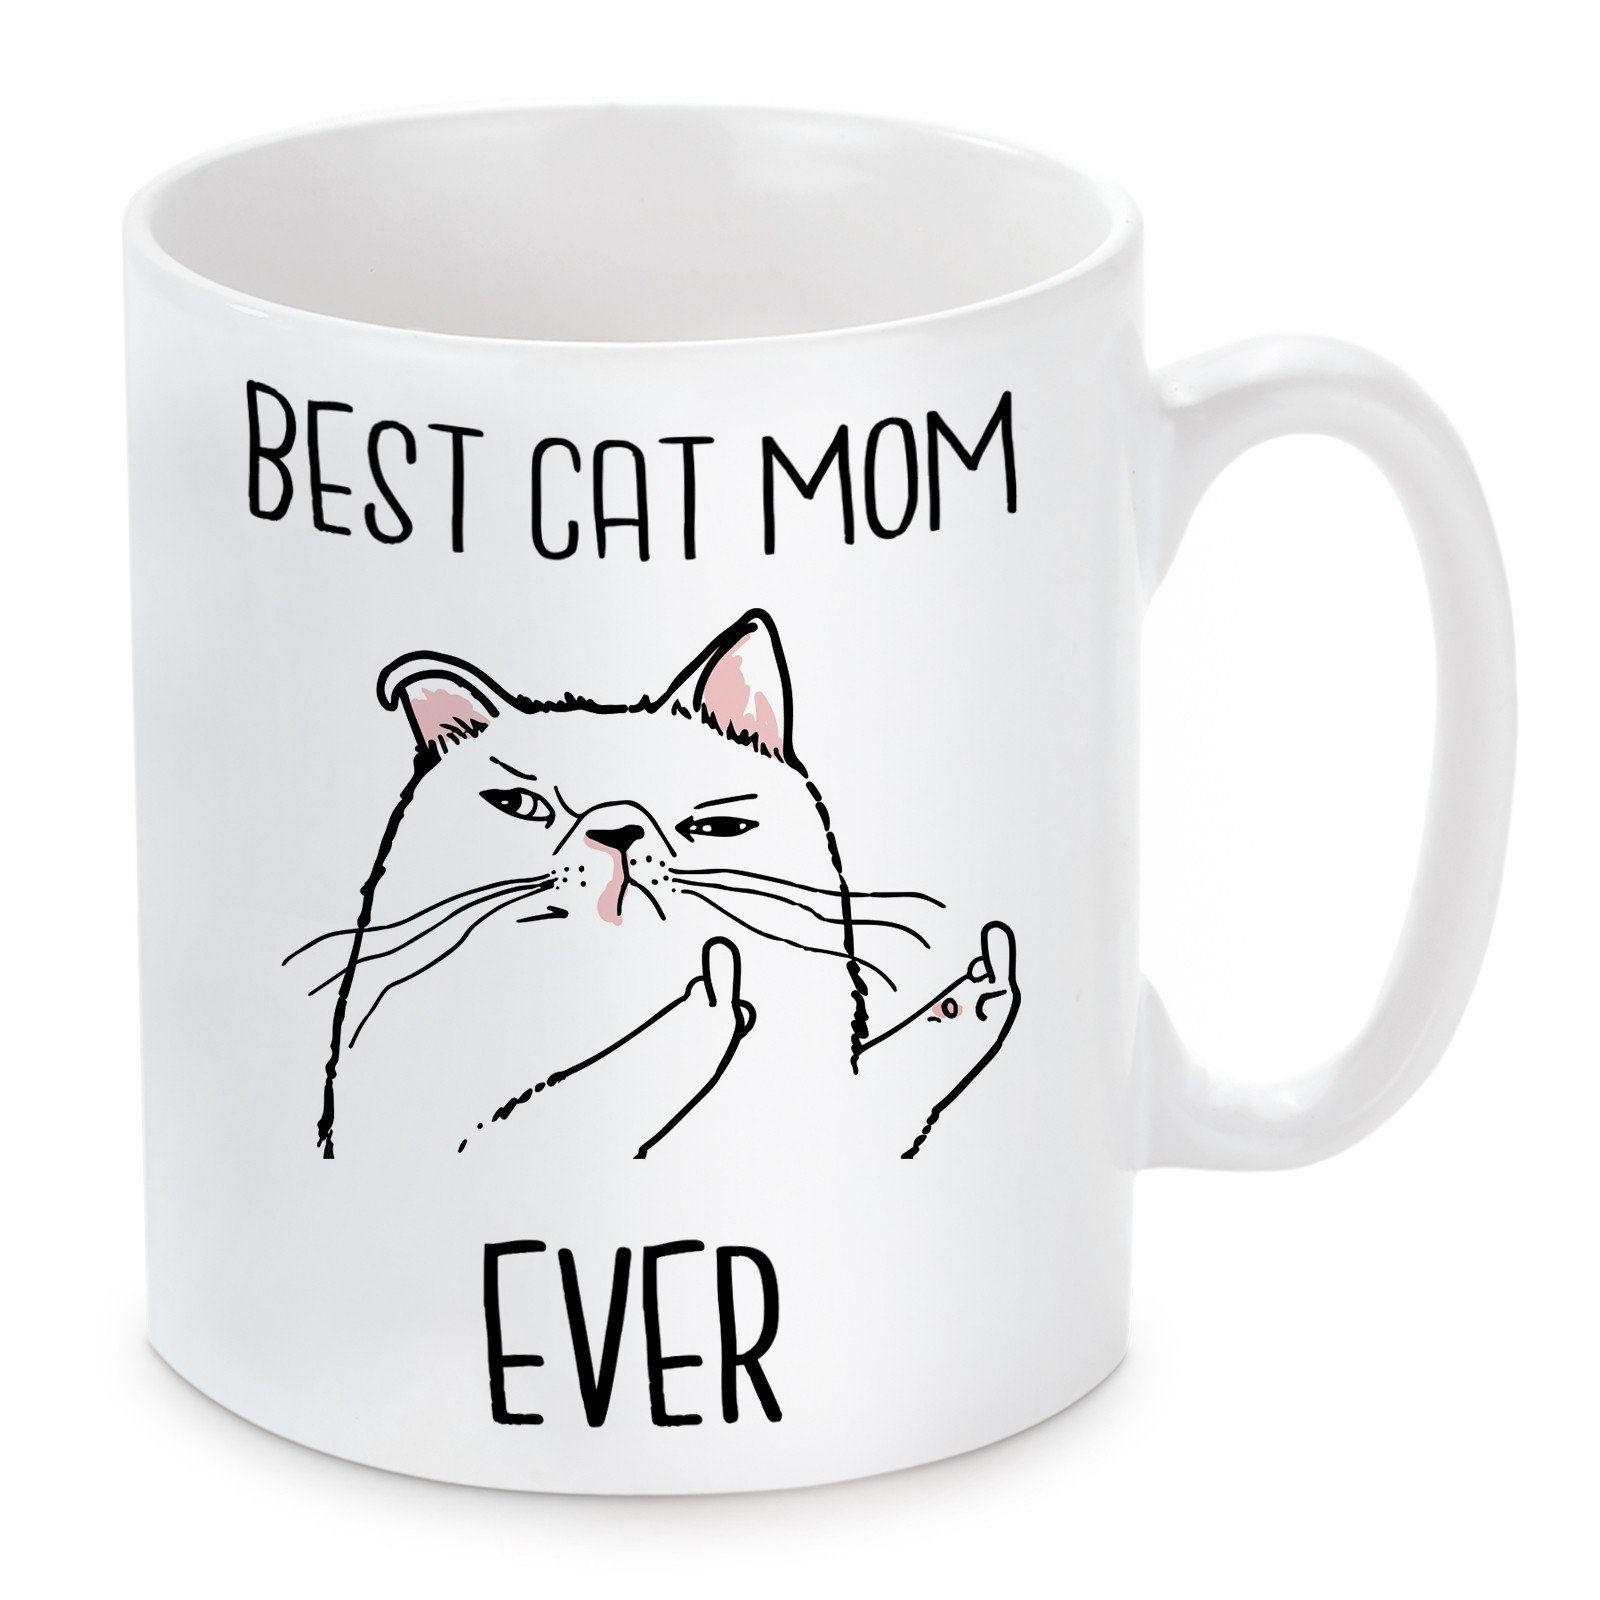 Herzbotschaft Tasse Kaffeebecher mit Motiv Best Cat Mom Ever, Keramik, Kaffeetasse spülmaschinenfest und mikrowellengeeignet